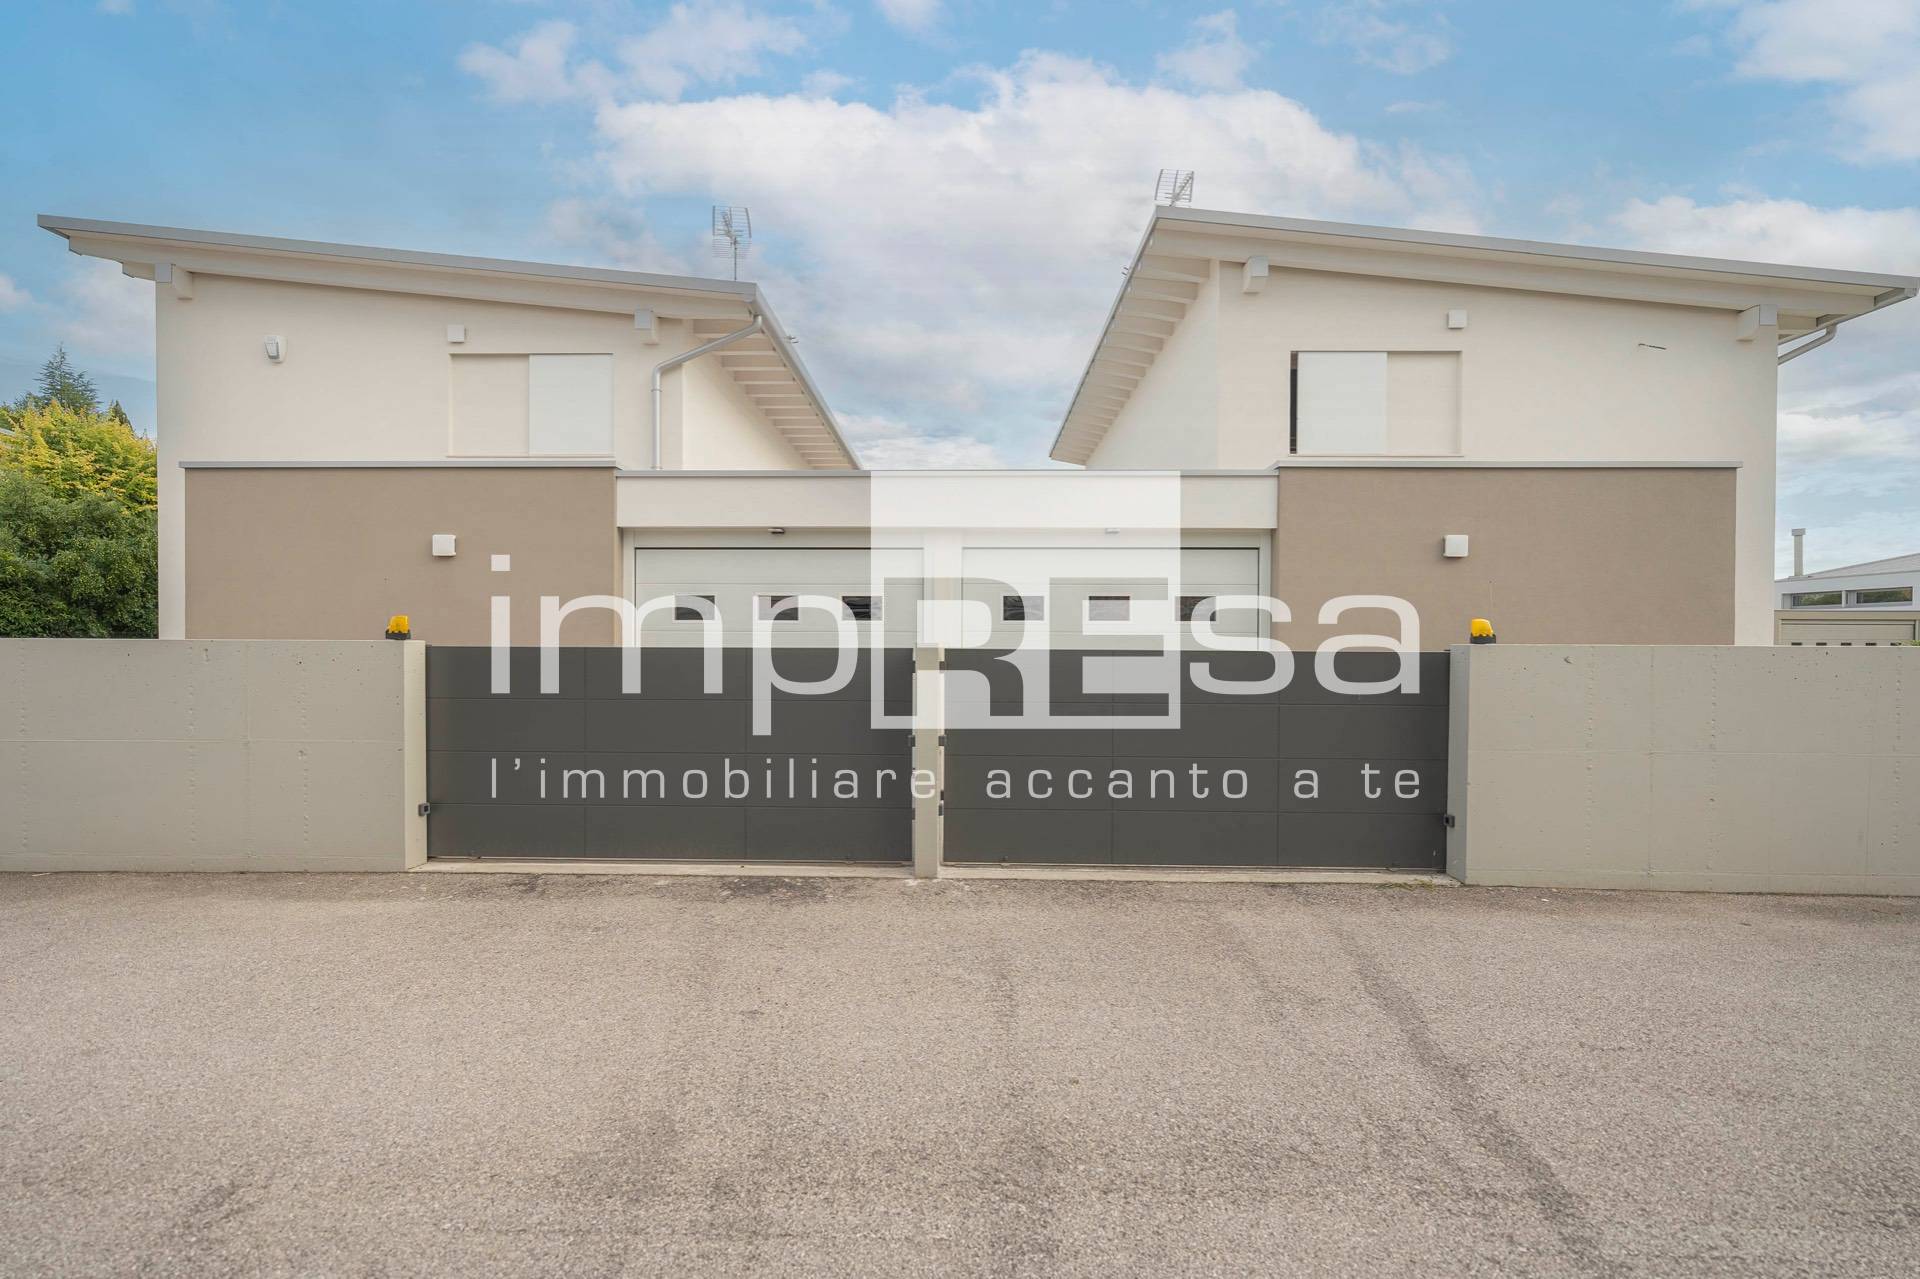 Villa Bifamiliare in vendita a Porcia, 4 locali, zona ipiccolo, prezzo € 480.000 | PortaleAgenzieImmobiliari.it